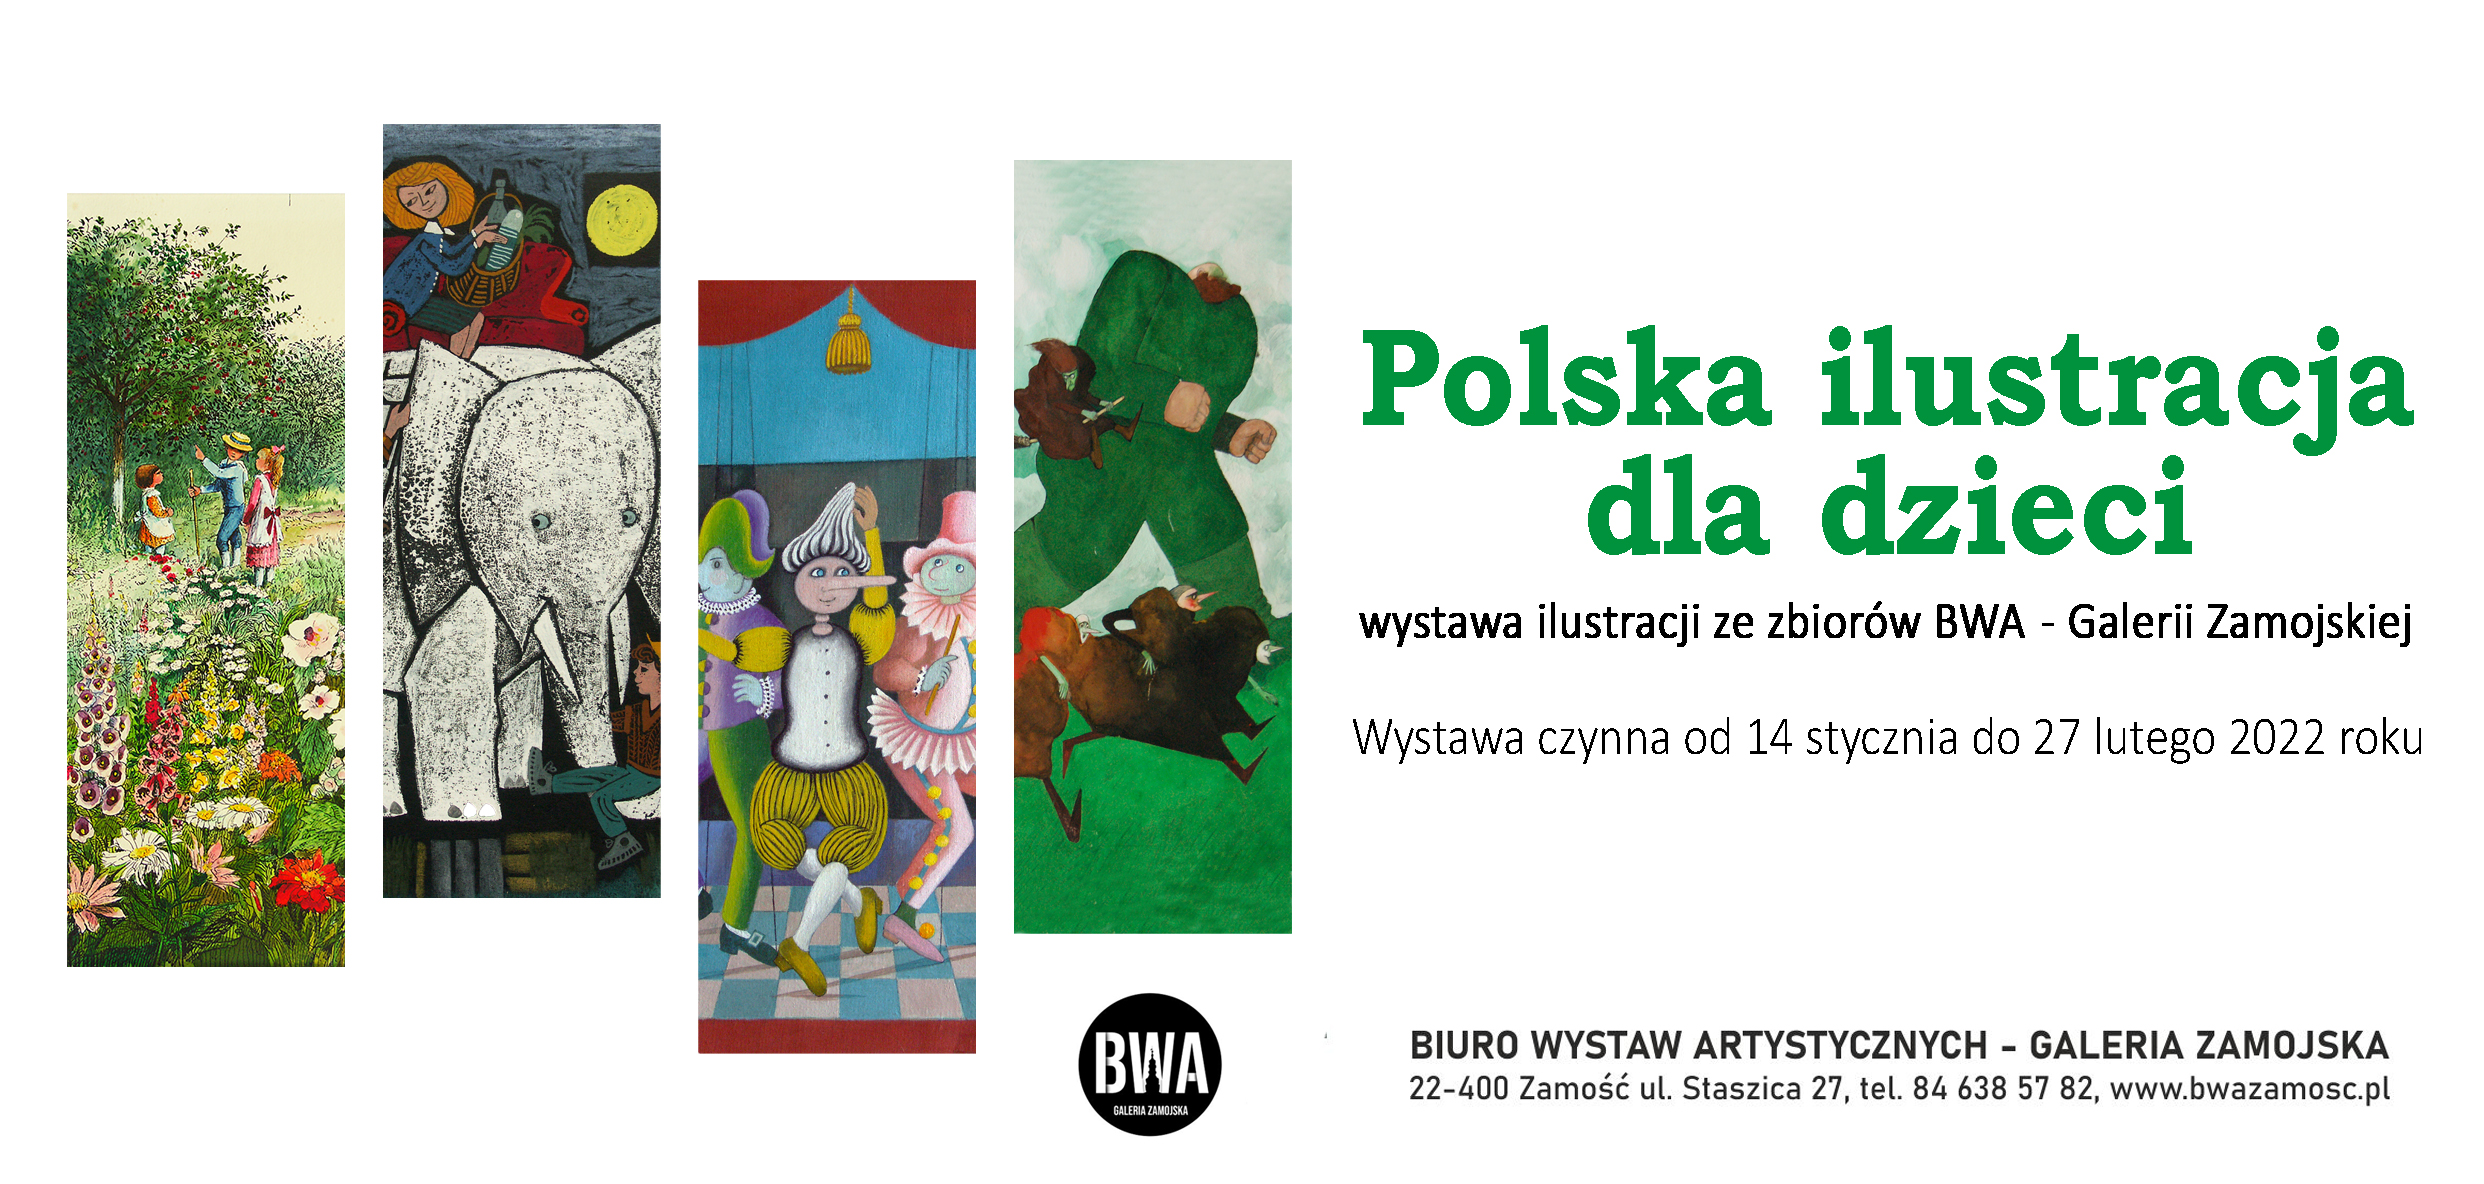 Polska ilustracja dla dzieci. Wystawa ze zbiorów BWA Galerii Zamojskiej